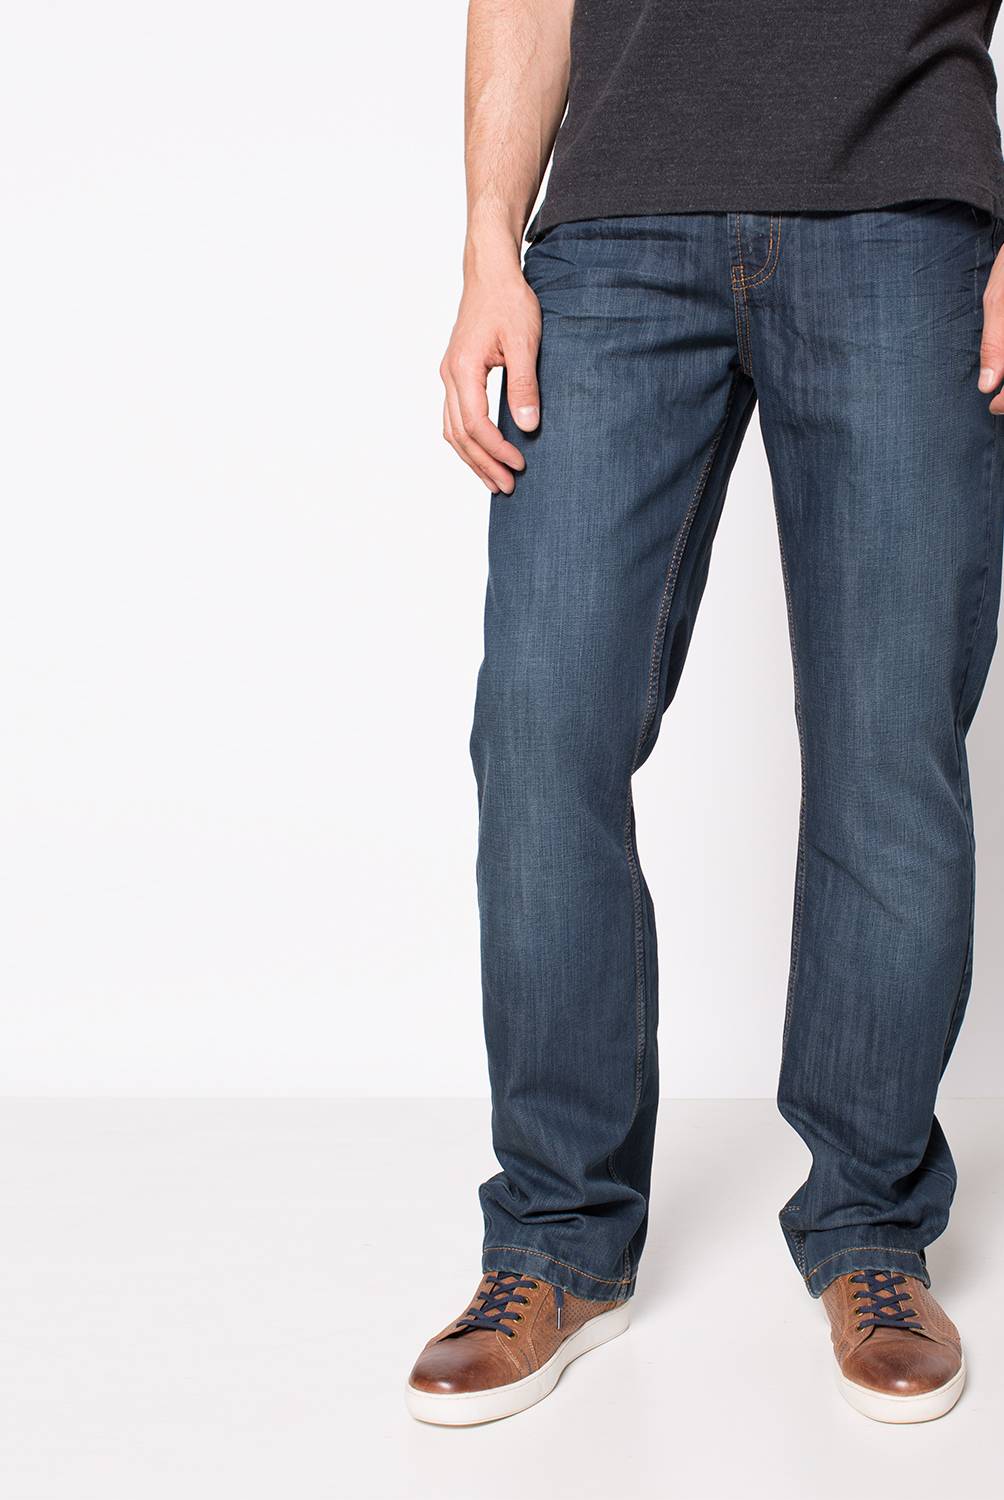 LEE - Lee Jeans Brooklyn Regular Fit